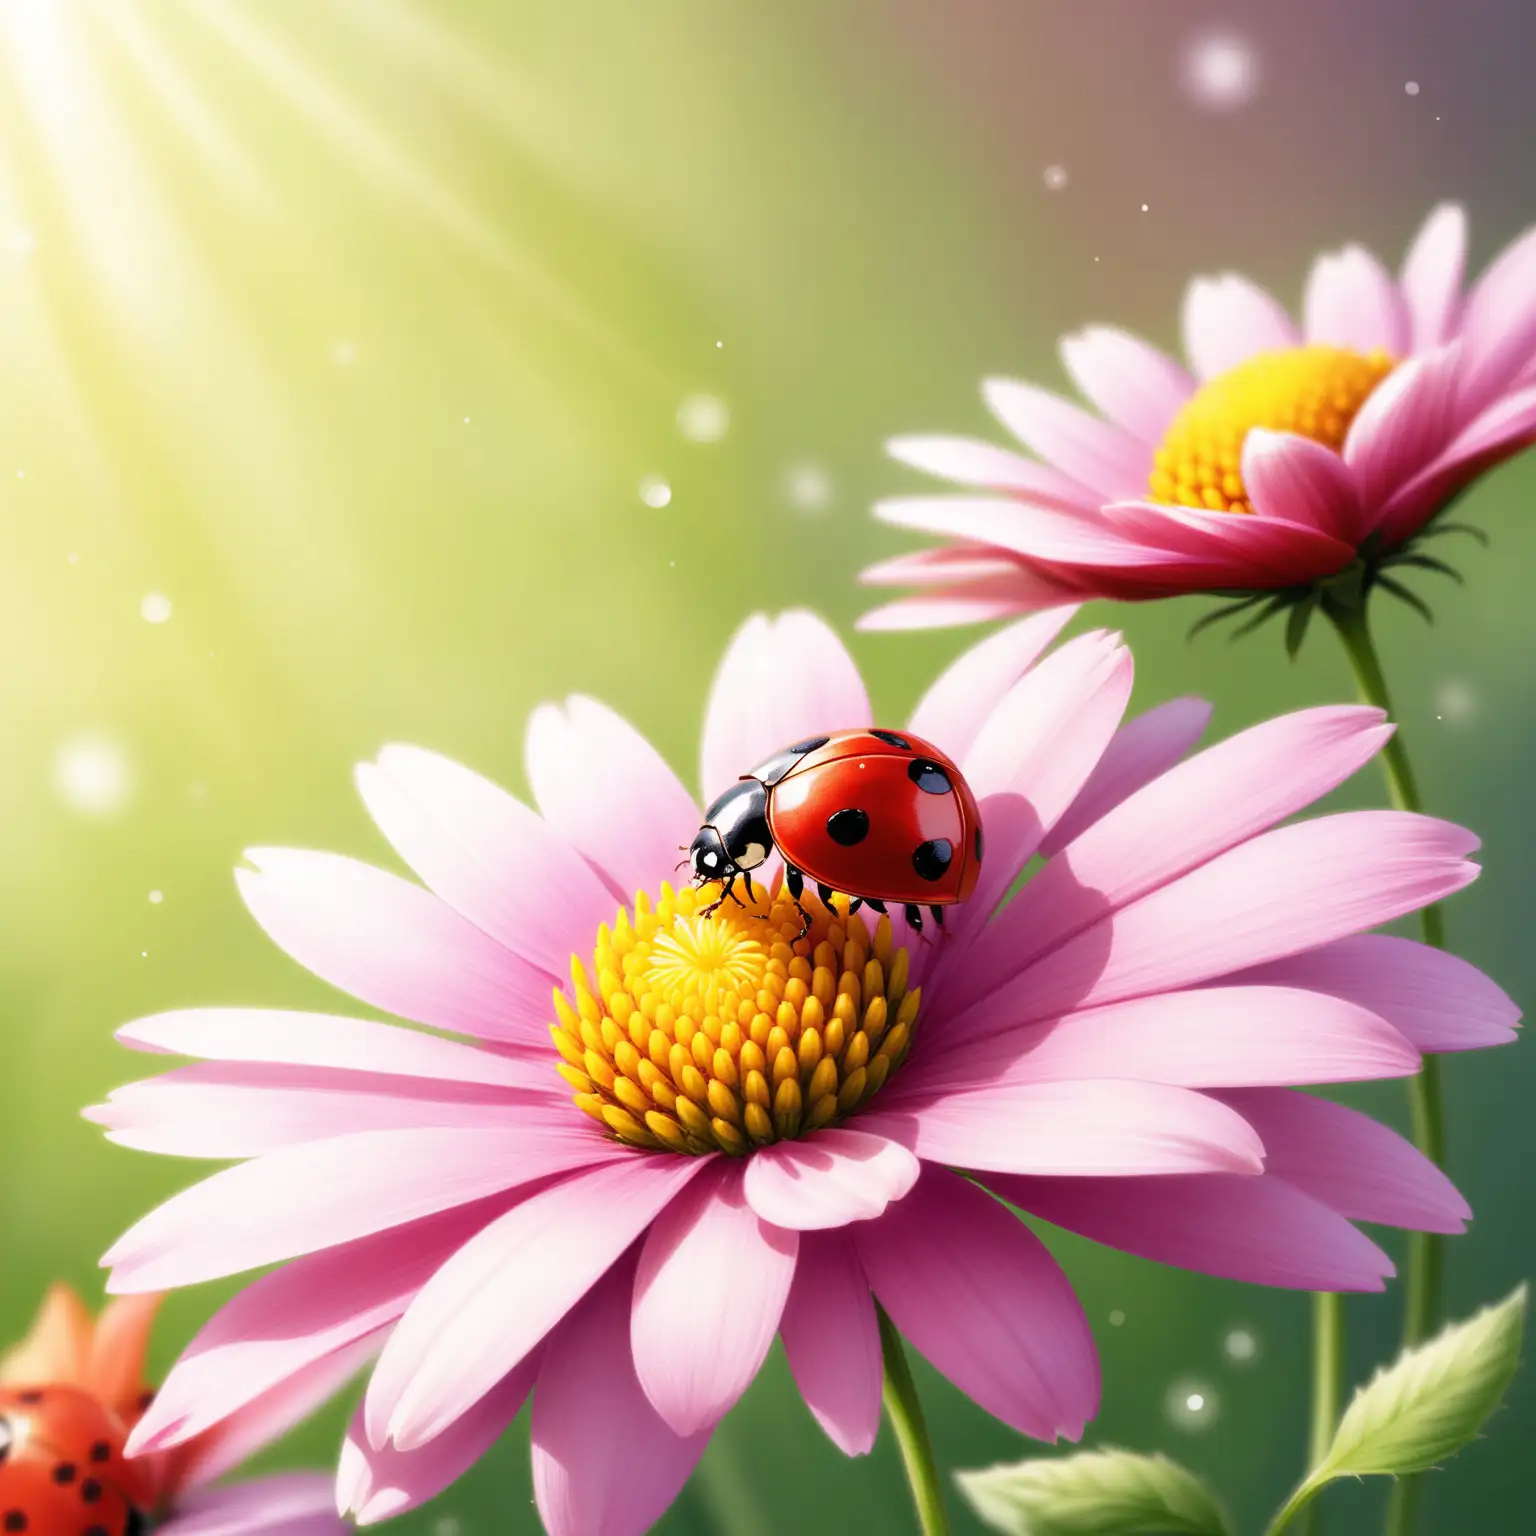 Vibrant Ladybugs Enjoying Nectar on Blossoming Flowers